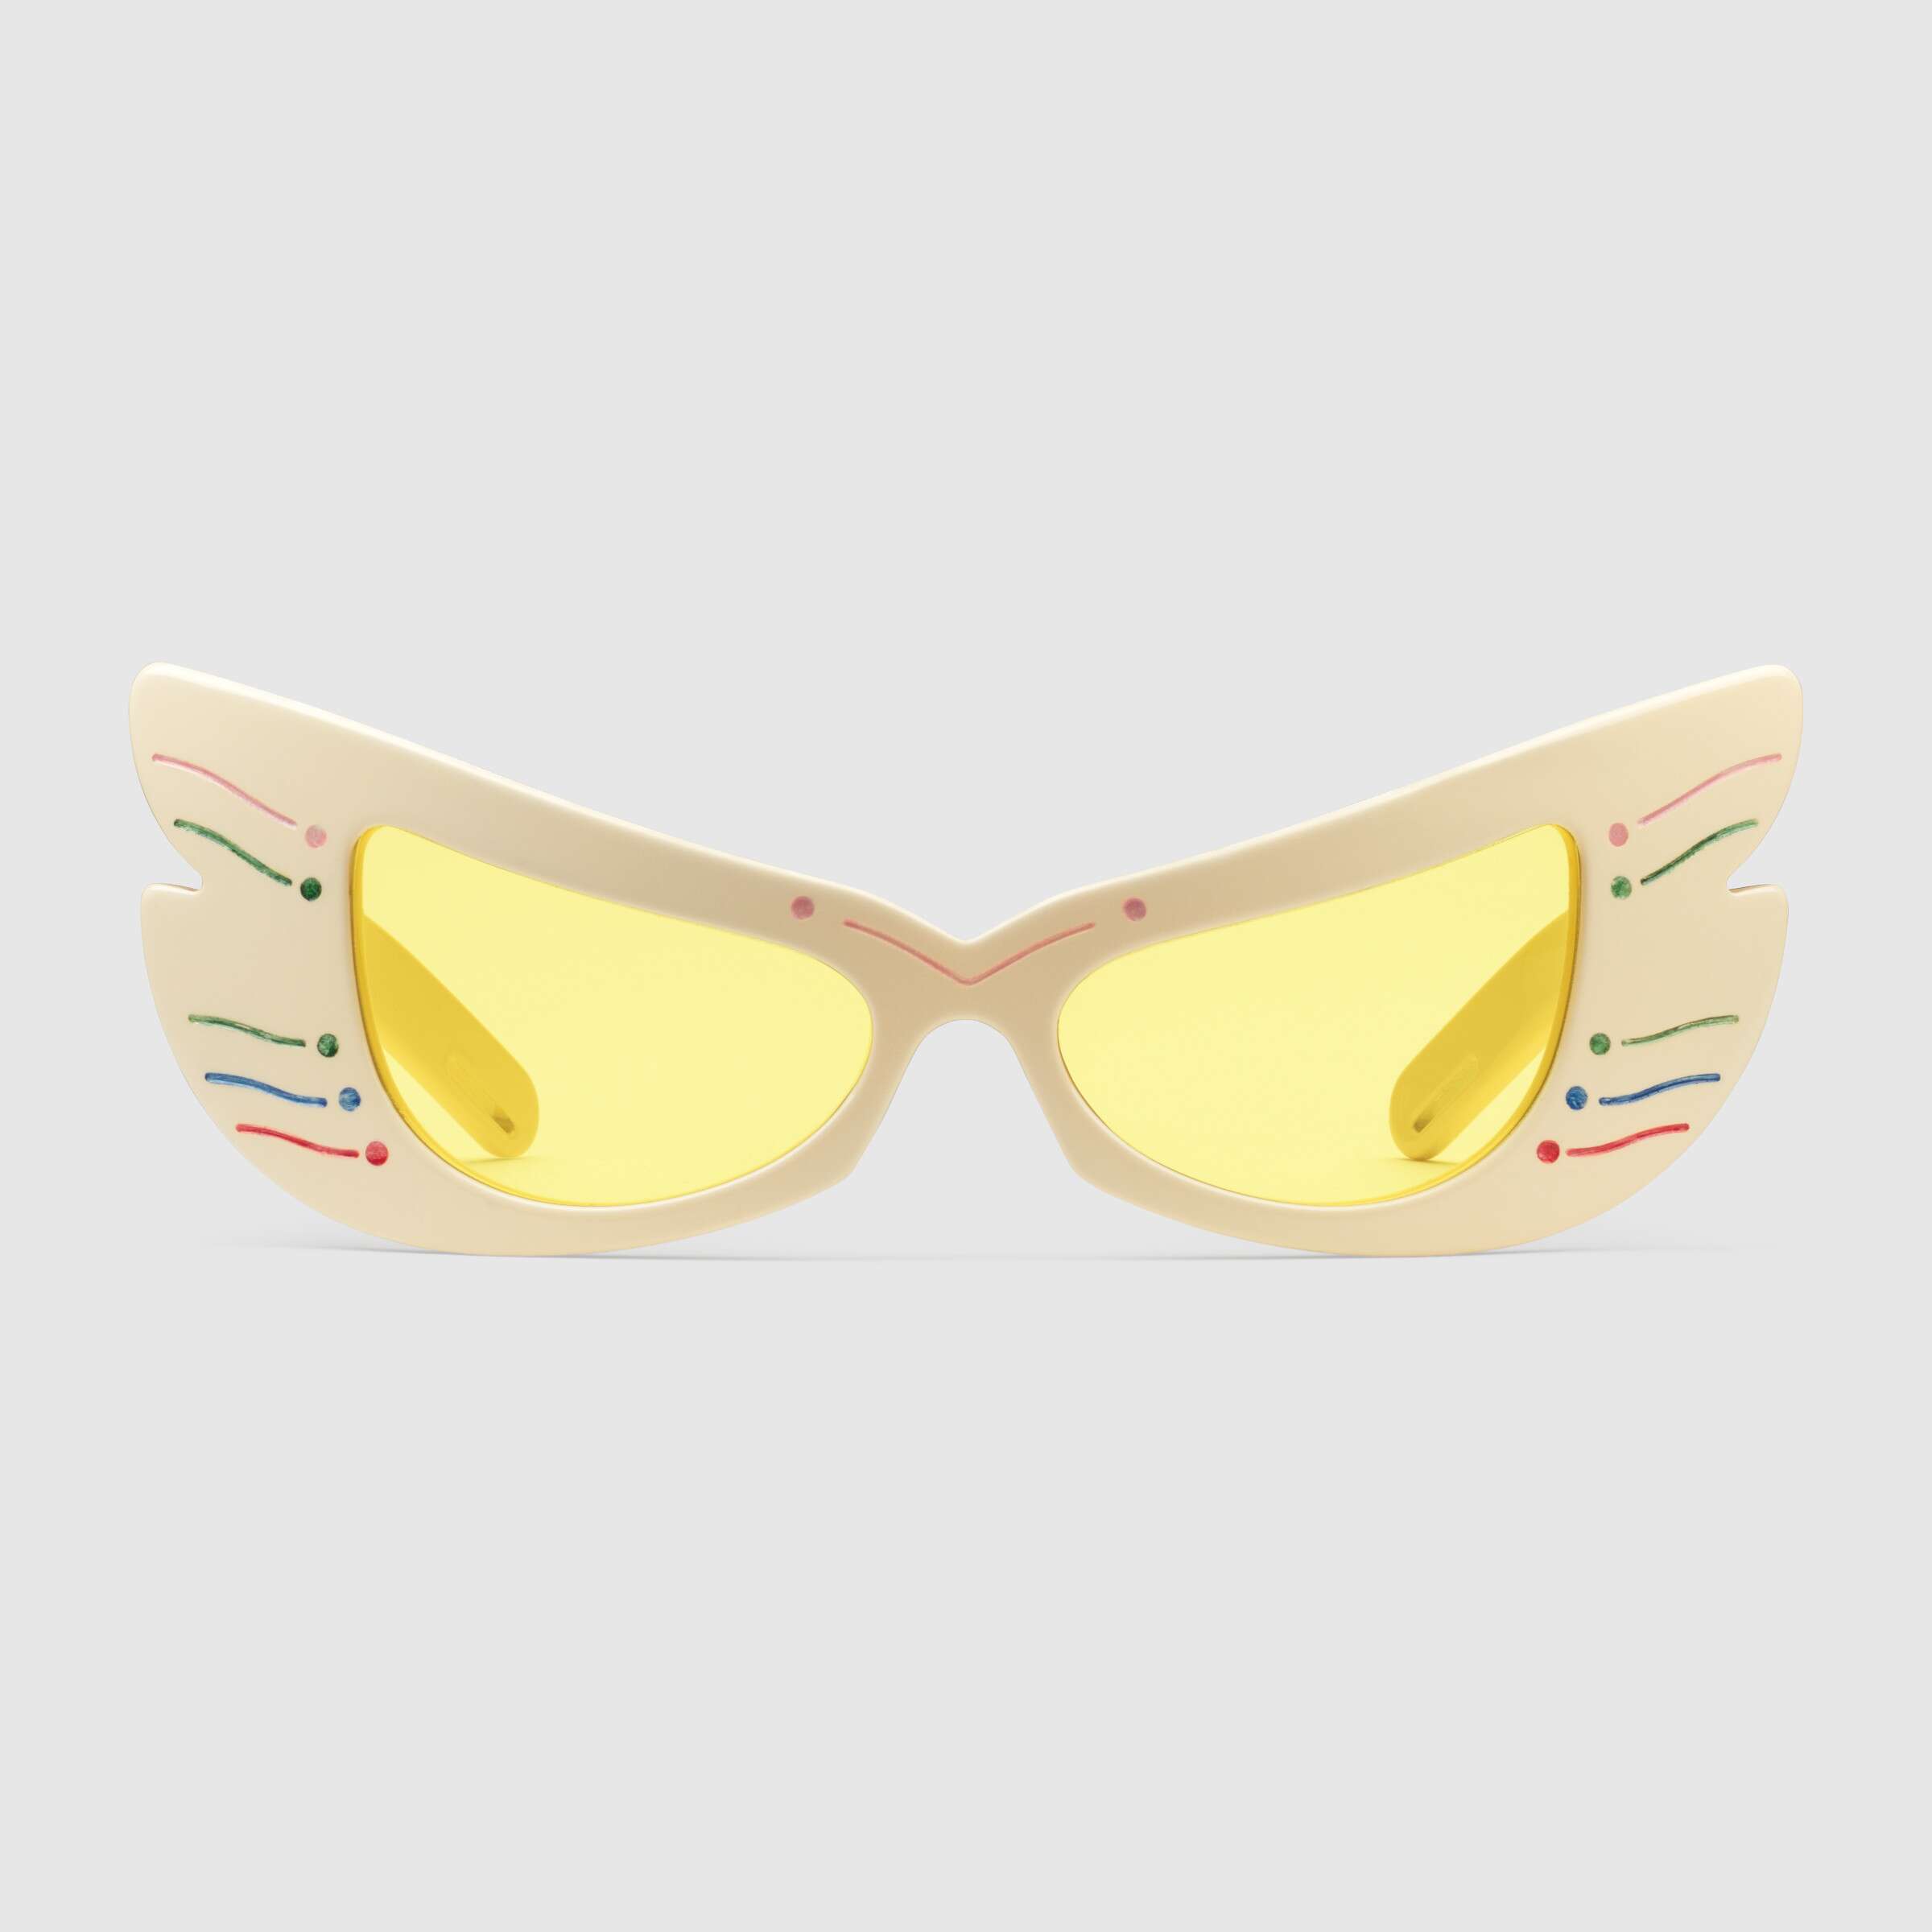 BANZ Ultimate Polarized Sunglasses